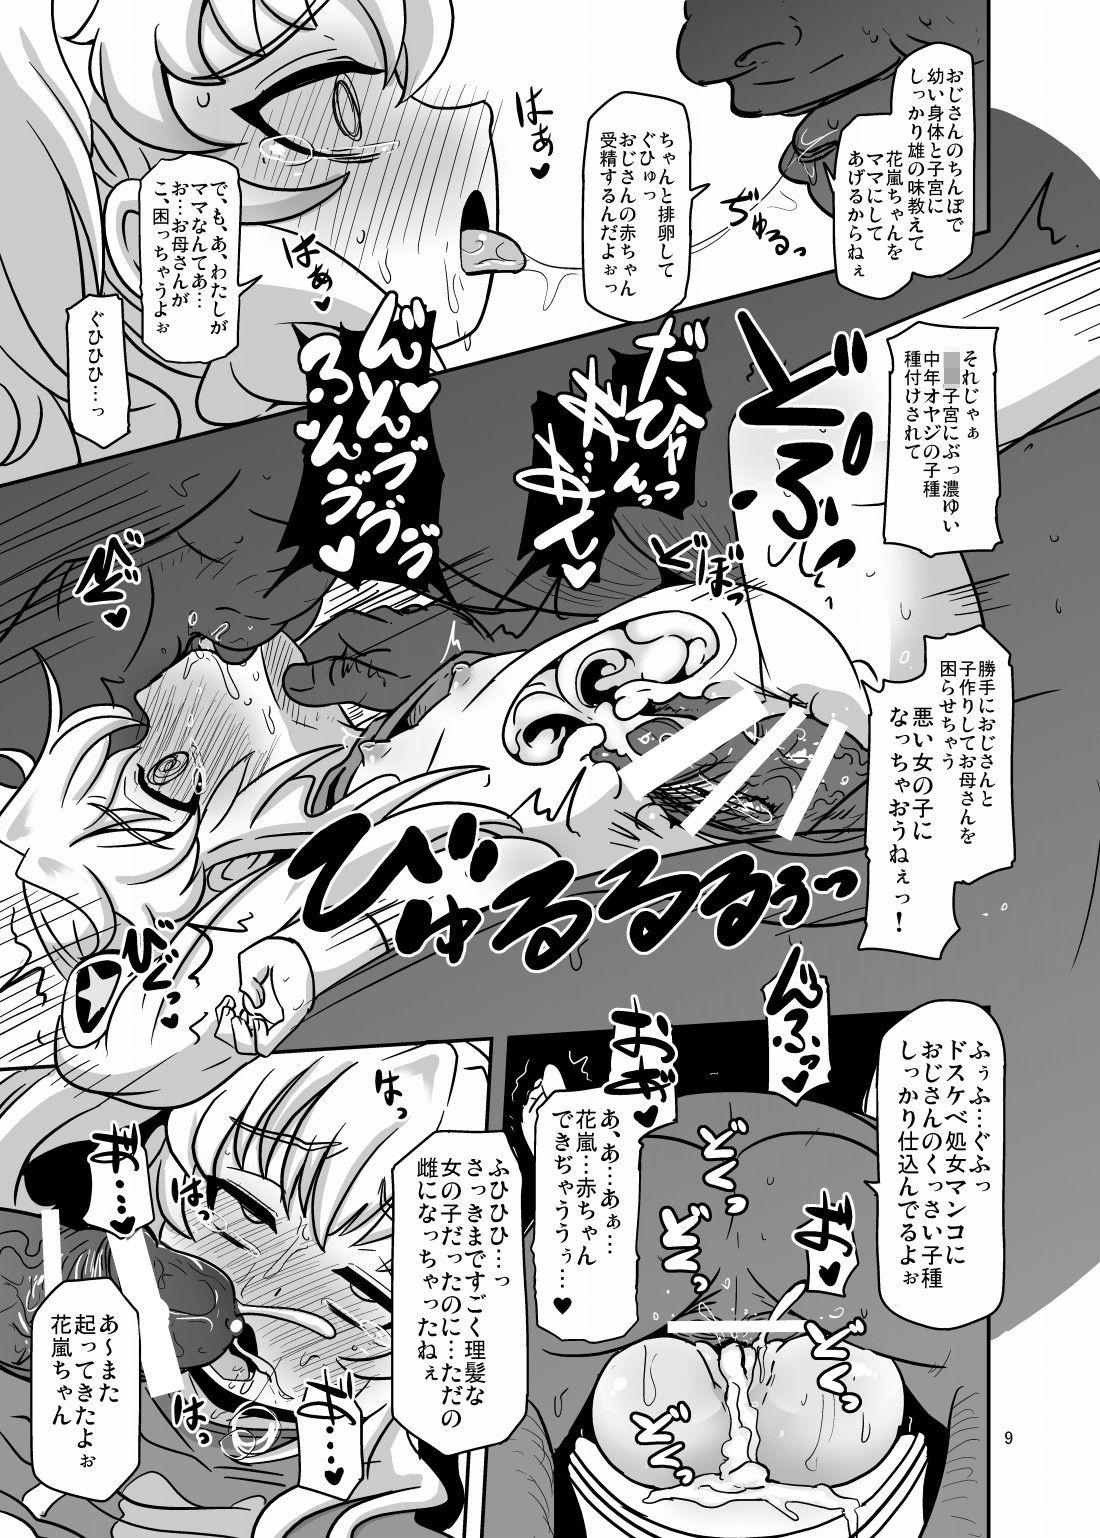 Stranger Teisou 100 Yen - Aquarion logos Facefuck - Page 8